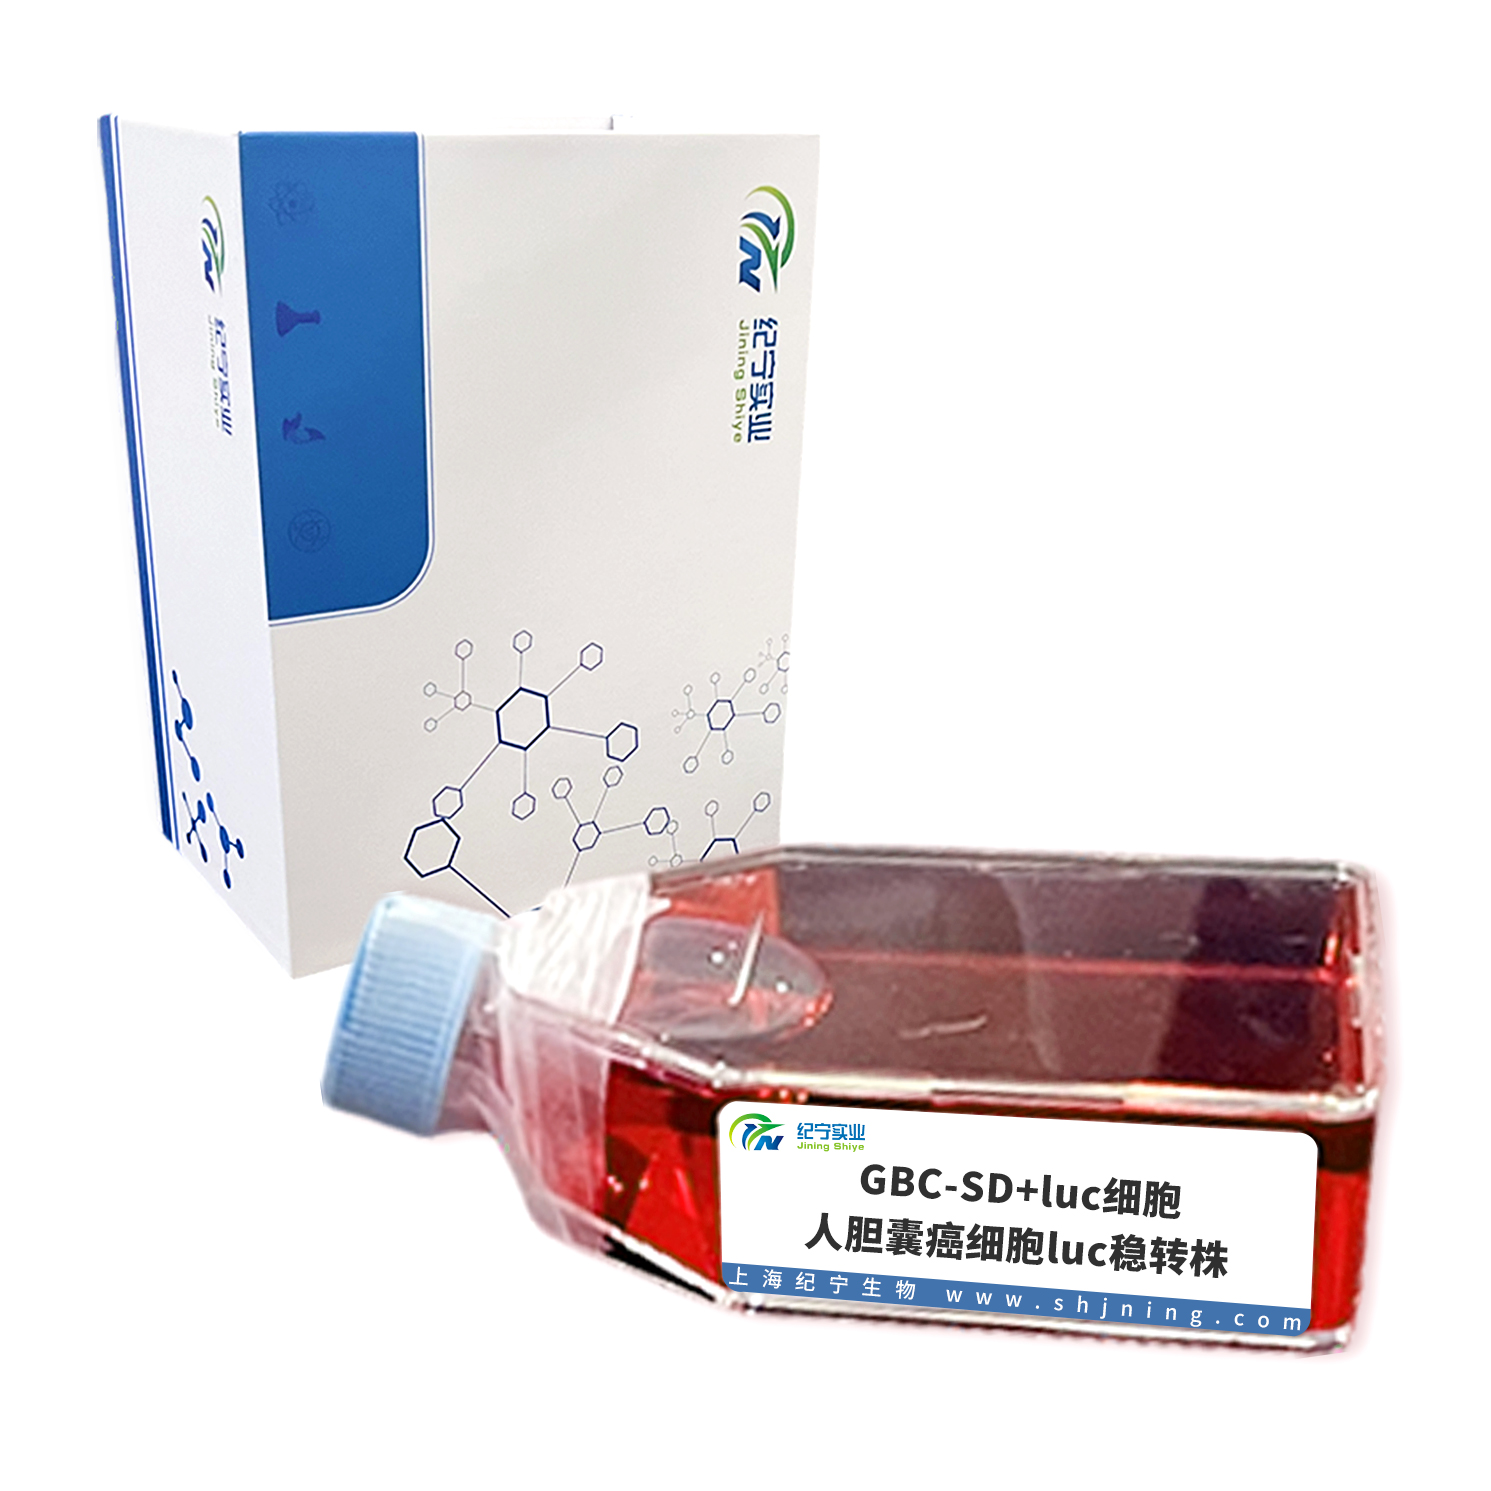 GBC-SD+luc细胞＿人胆囊癌细胞luc稳转株